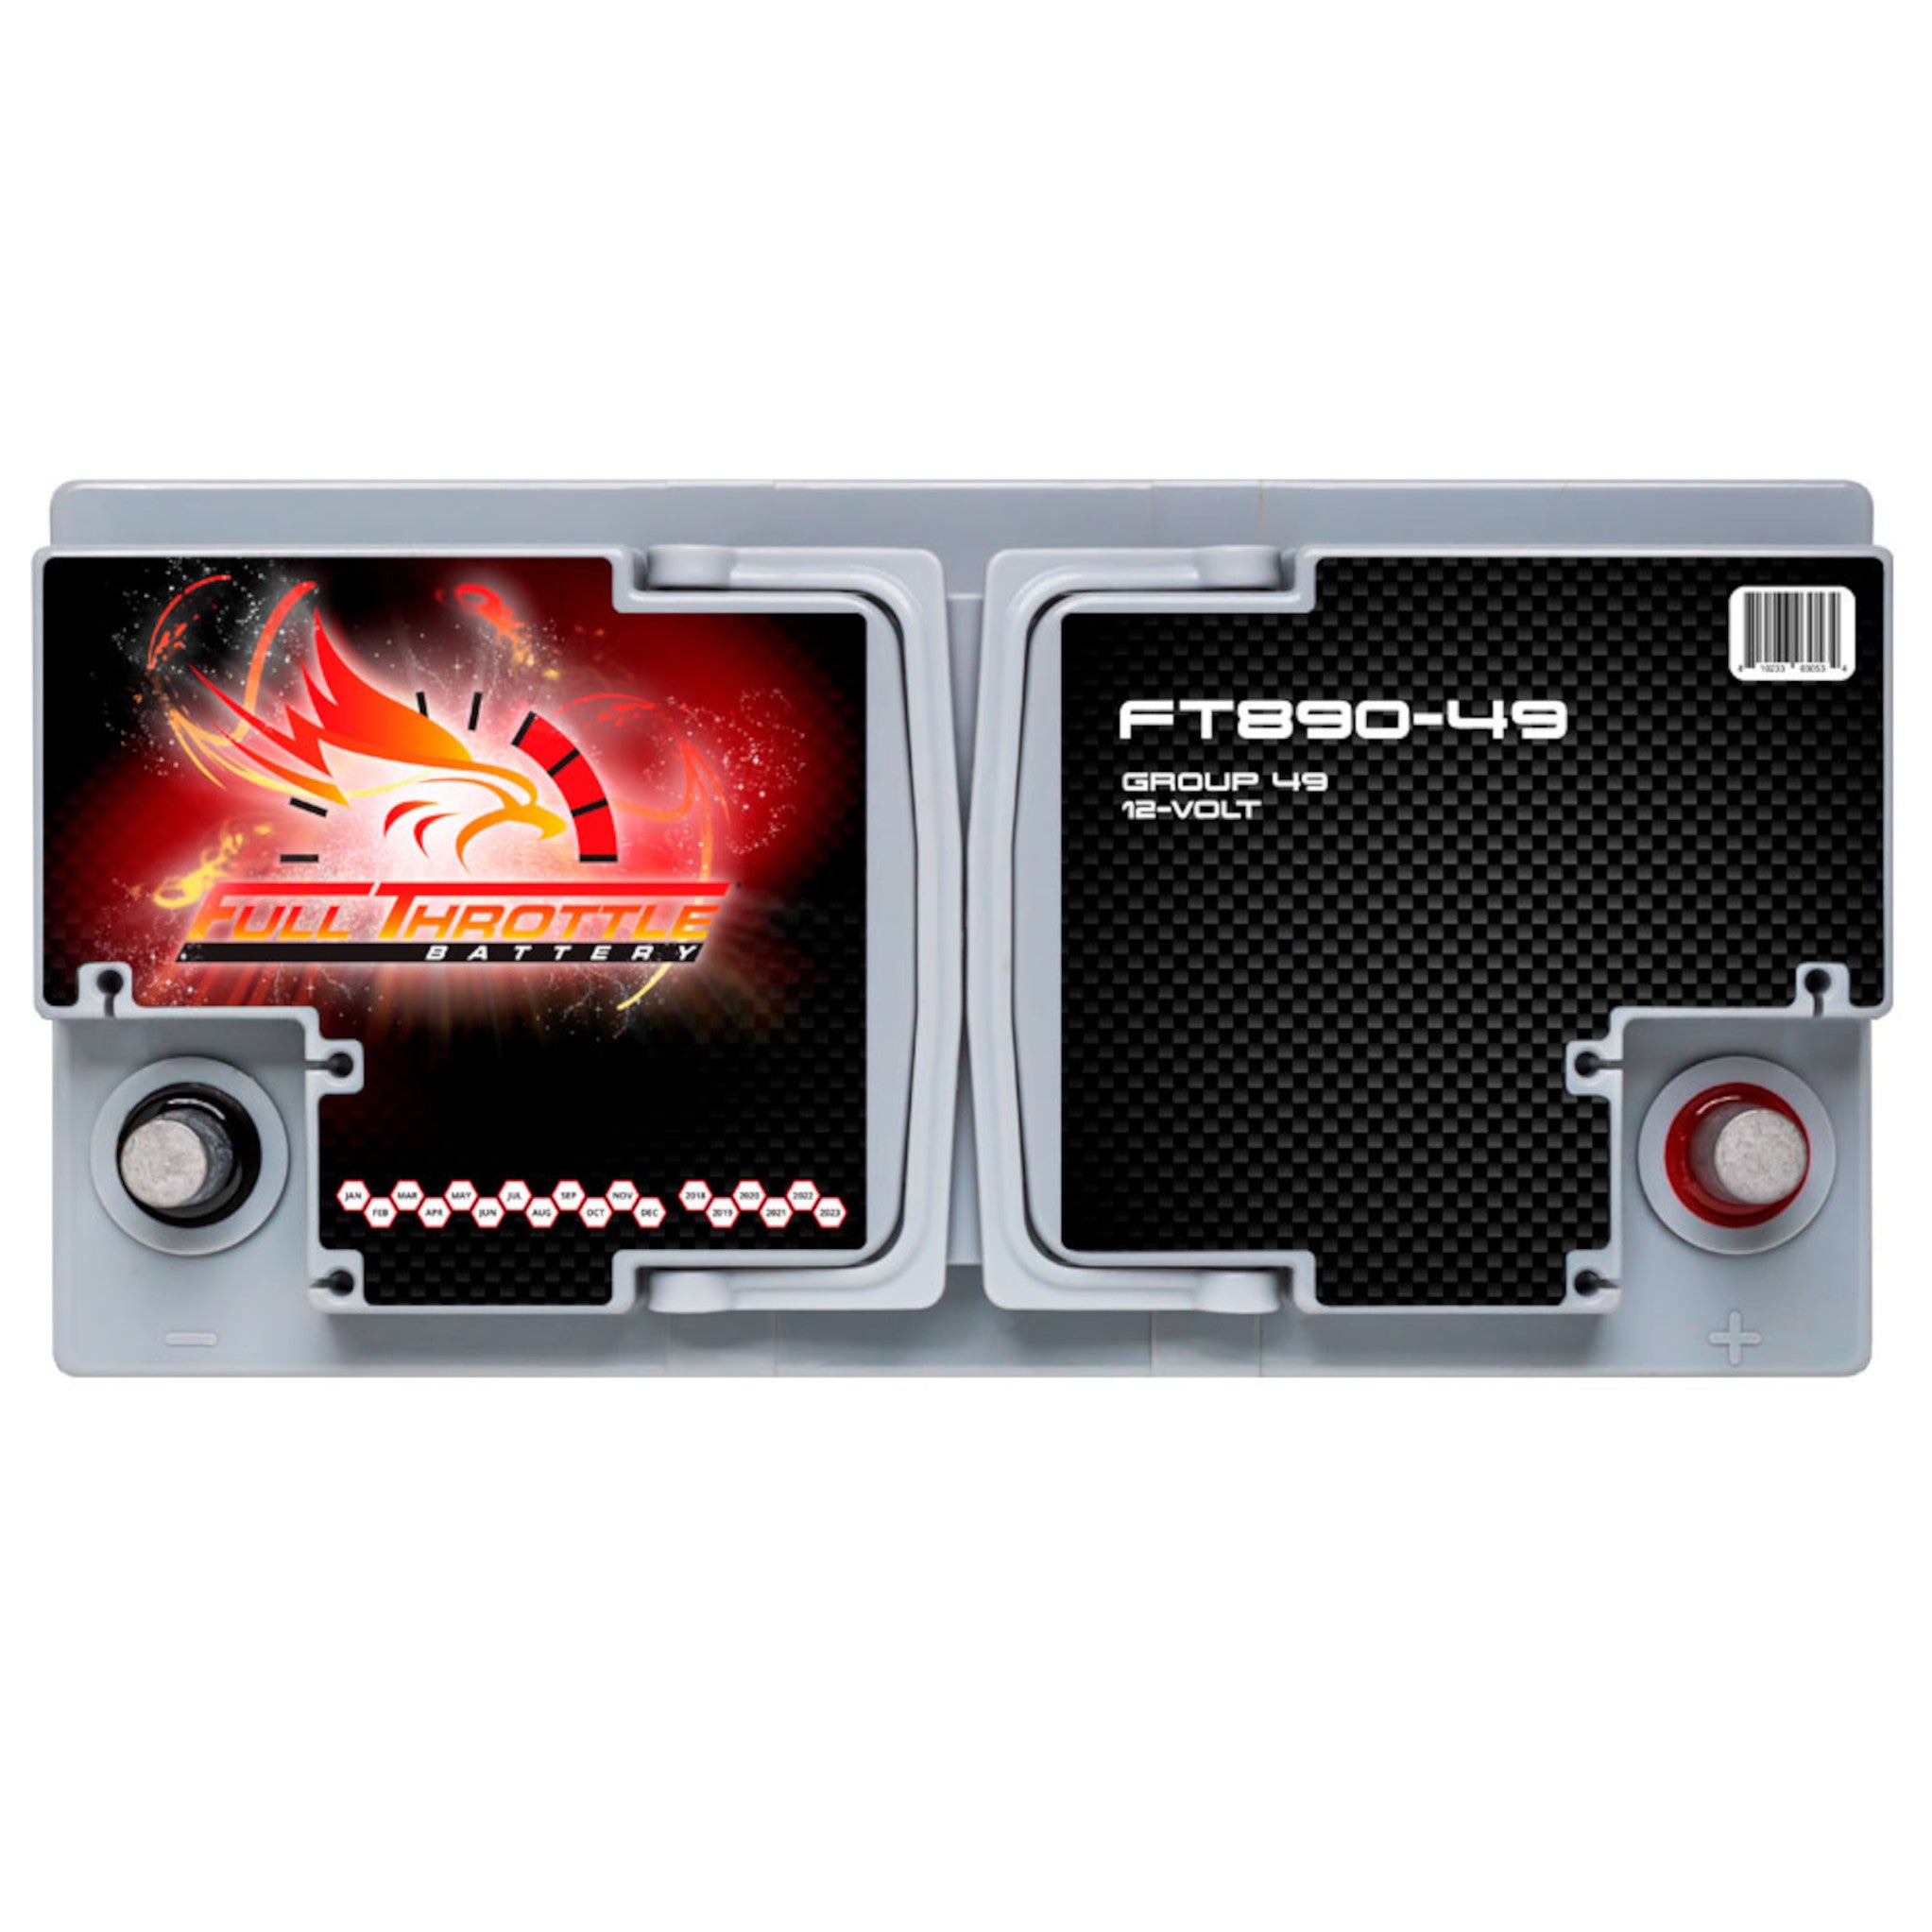 Full Throttle FT890-49 12V High Performance AGM Group 49 Battery